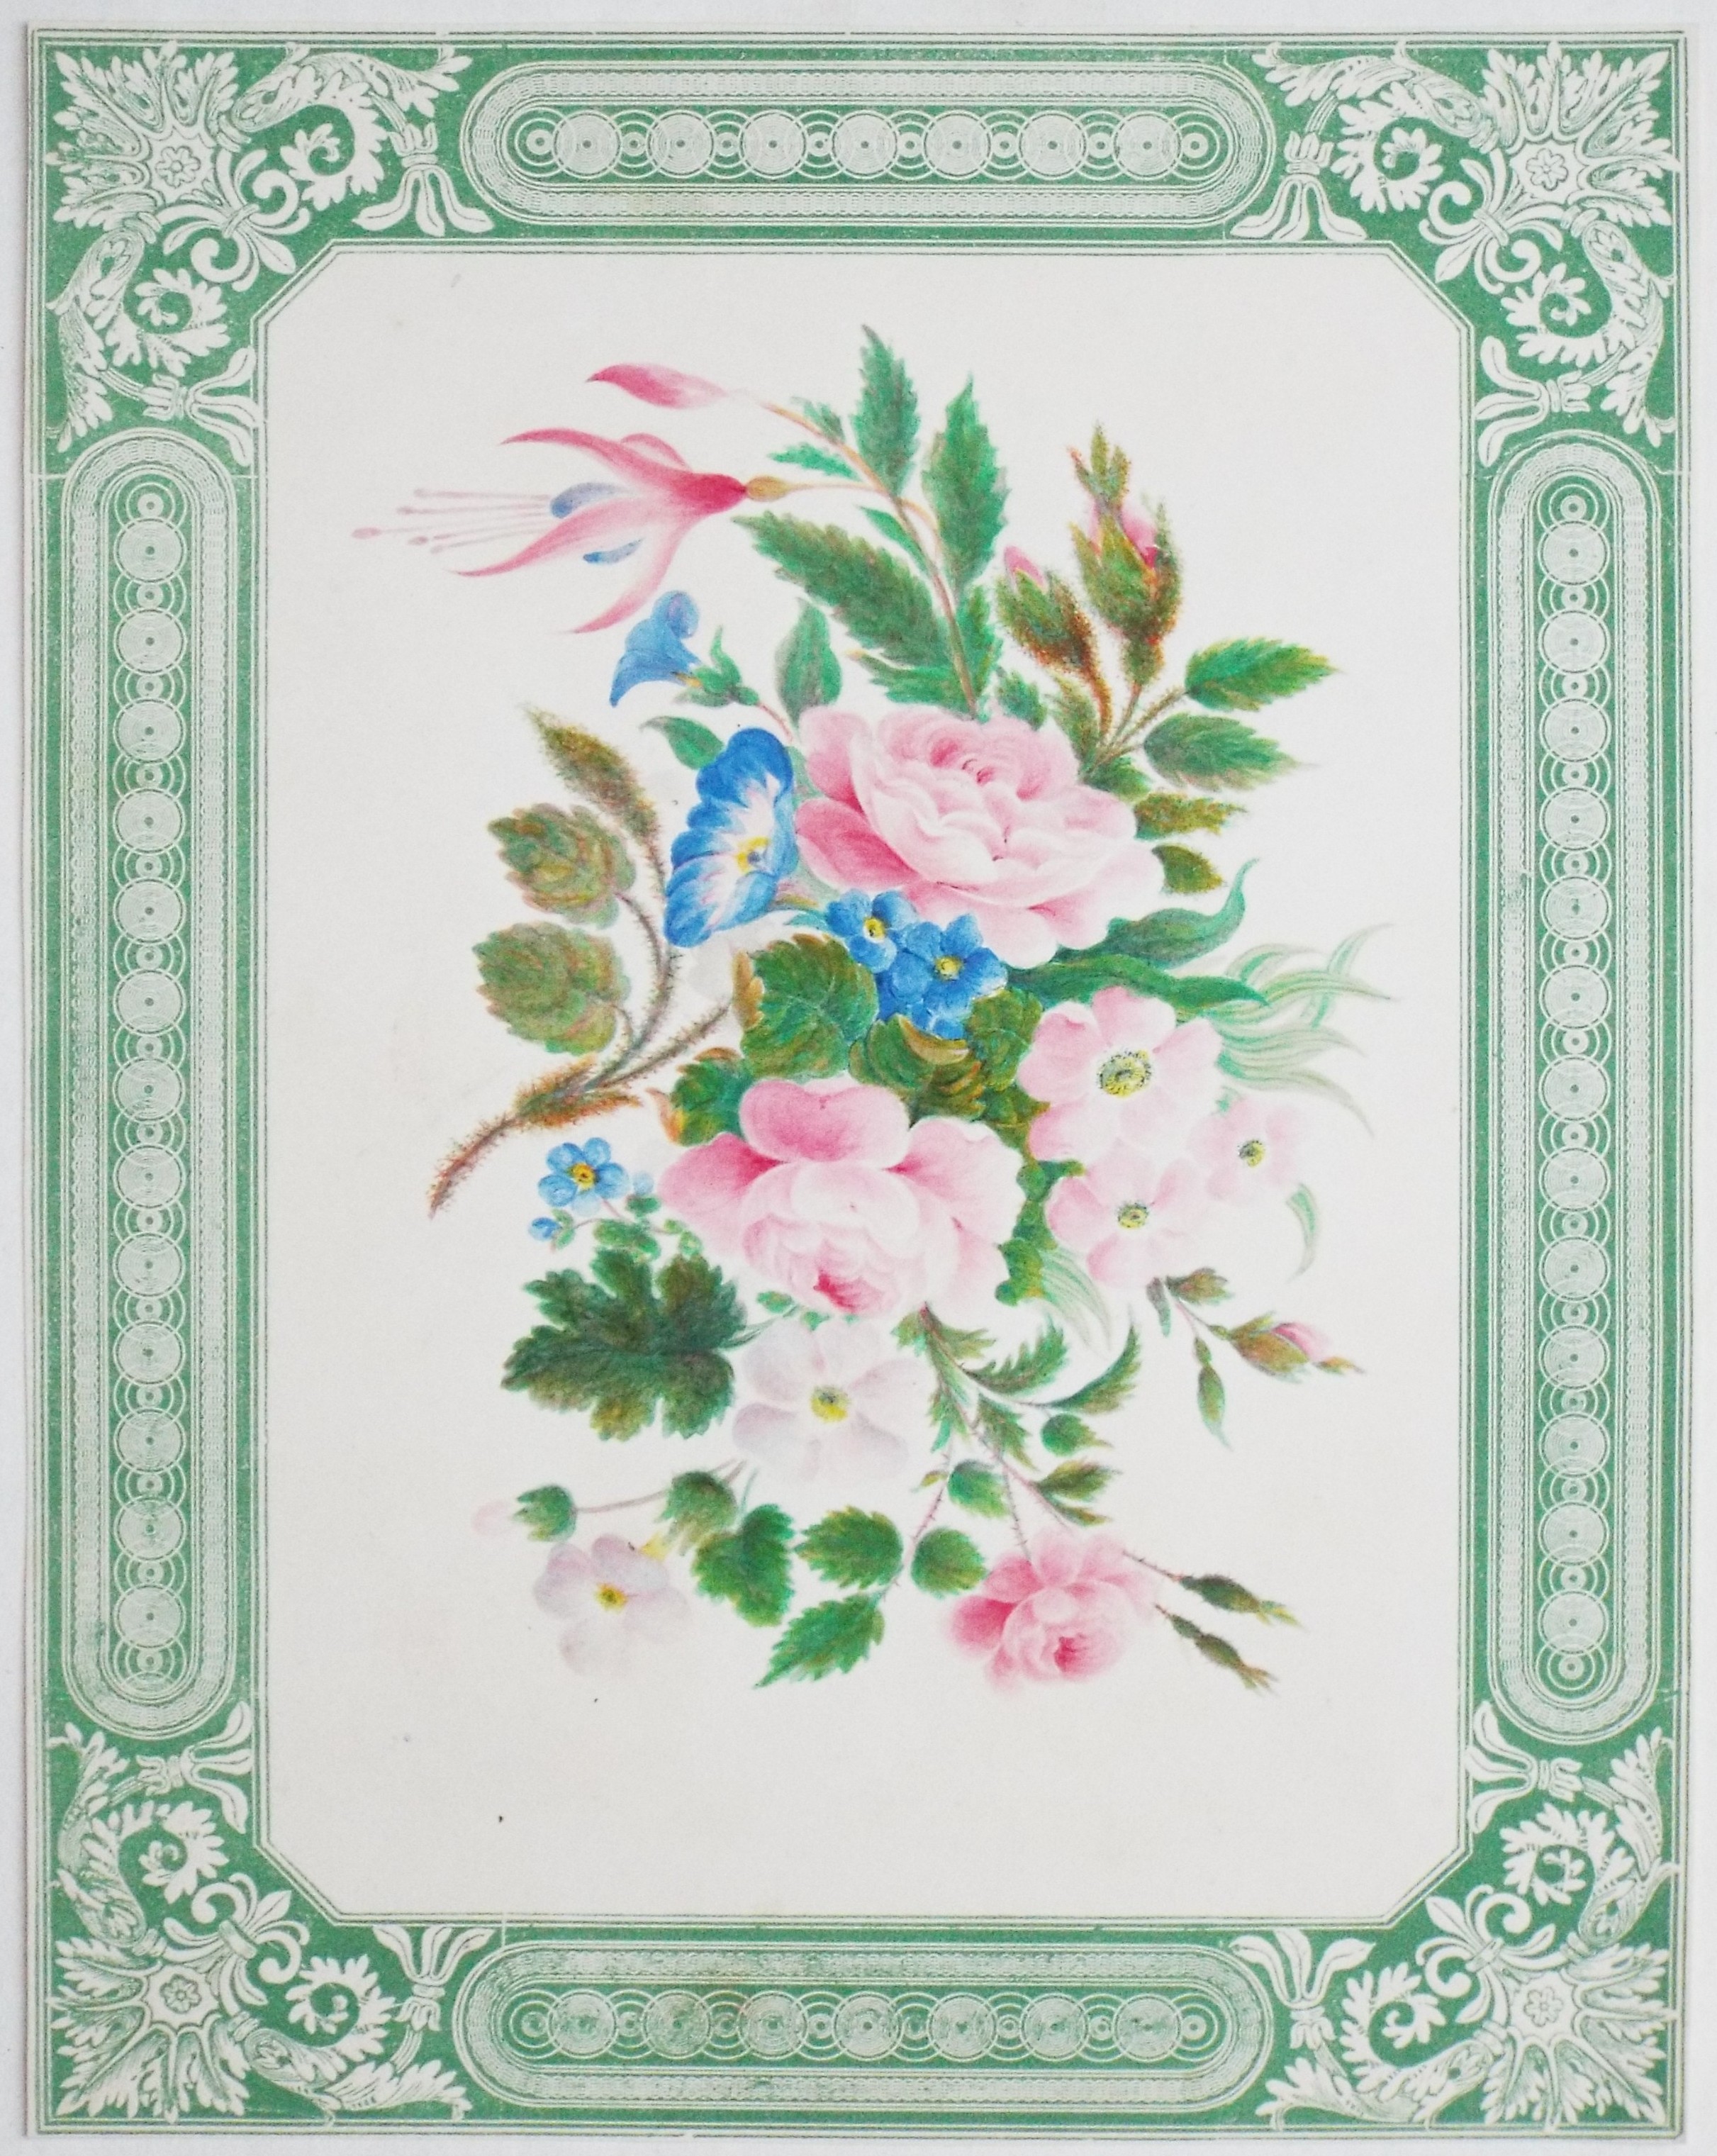 Chromo-lithograph - Floral arrangement